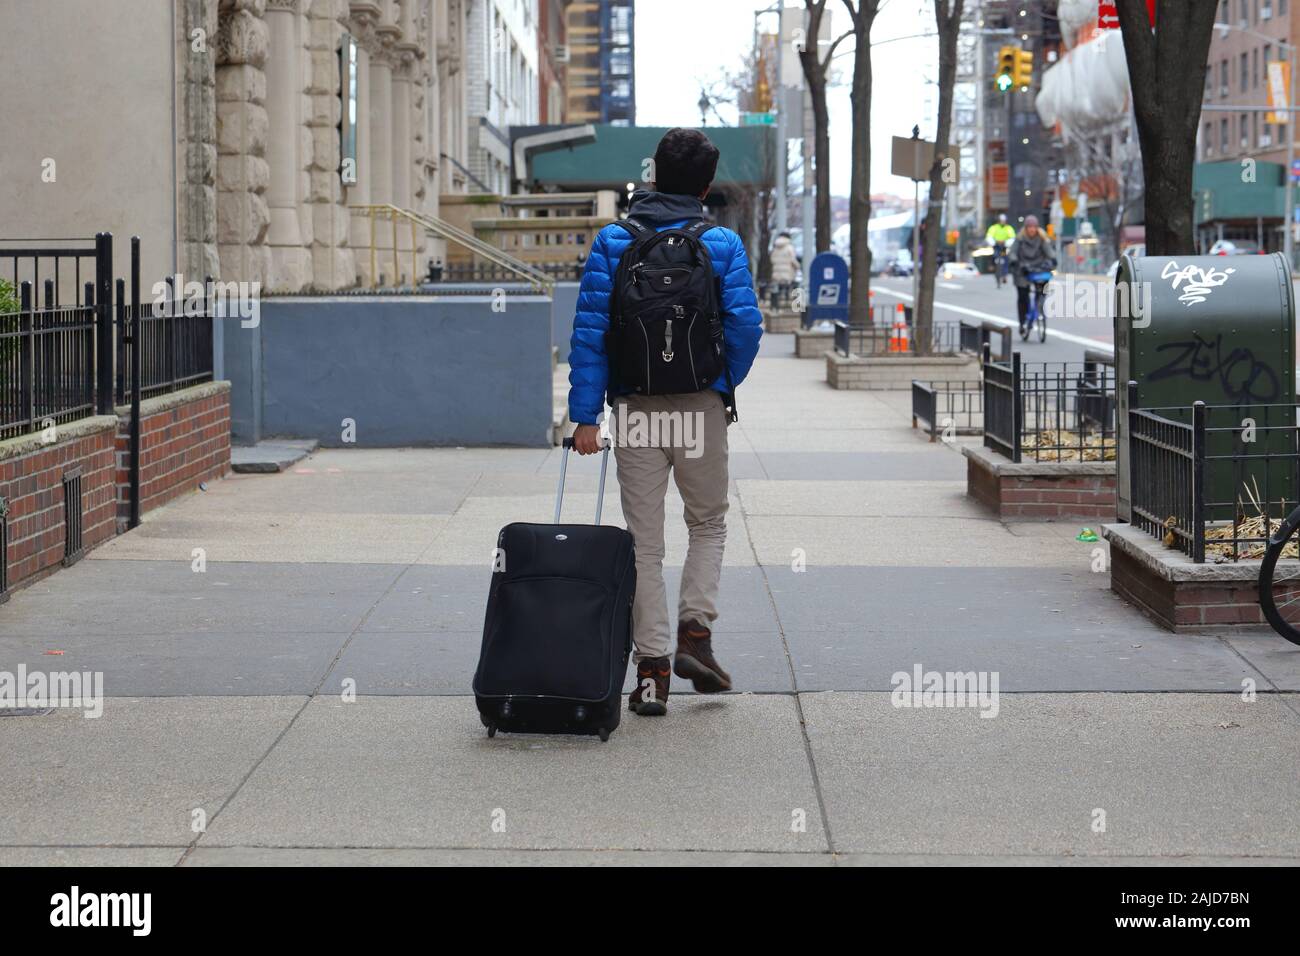 Une personne en fauteuil roulant d'une valise roulant sur un trottoir à New York, NY Banque D'Images